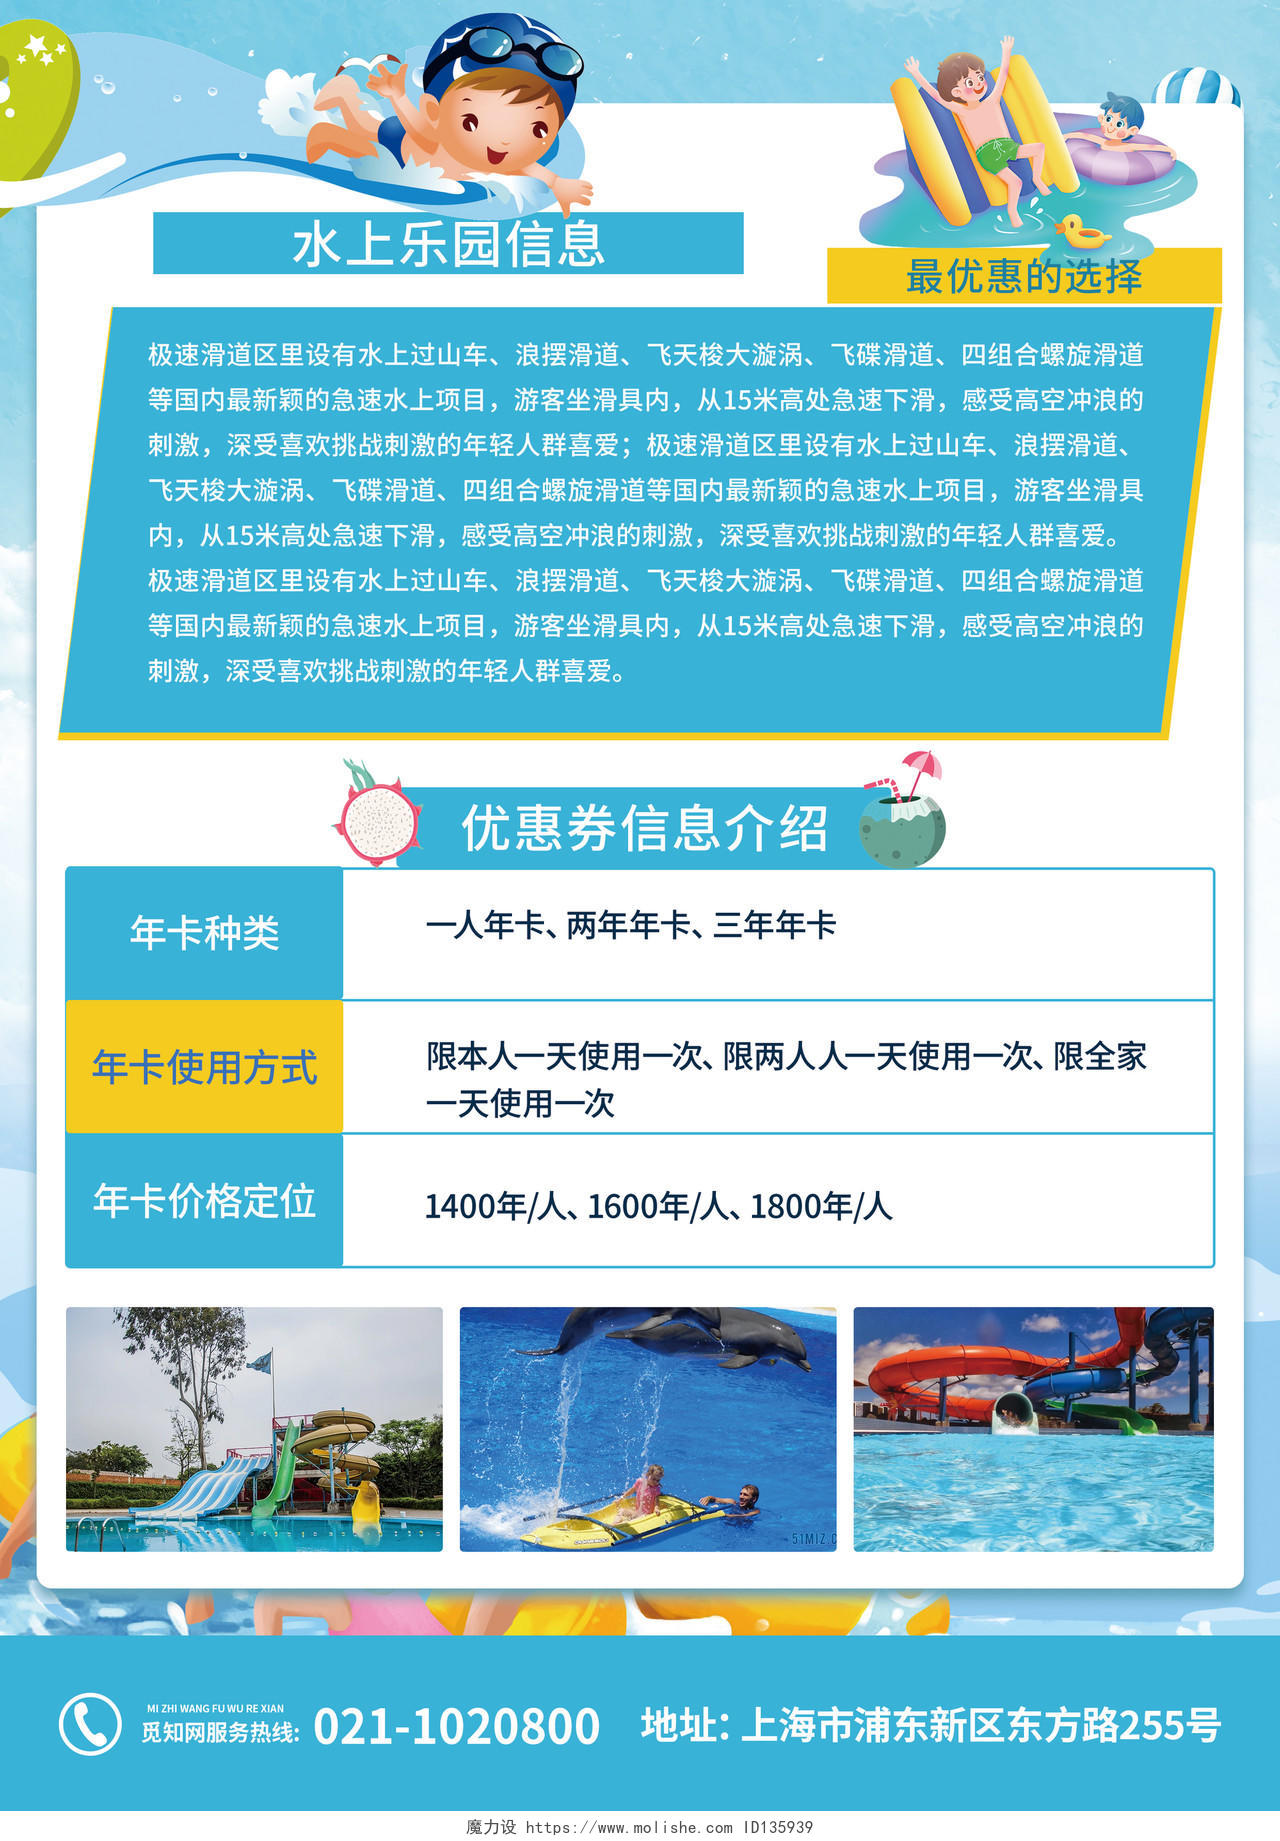 蓝色卡通水上乐园宣传单玩转水上乐园清凉一夏水上乐园